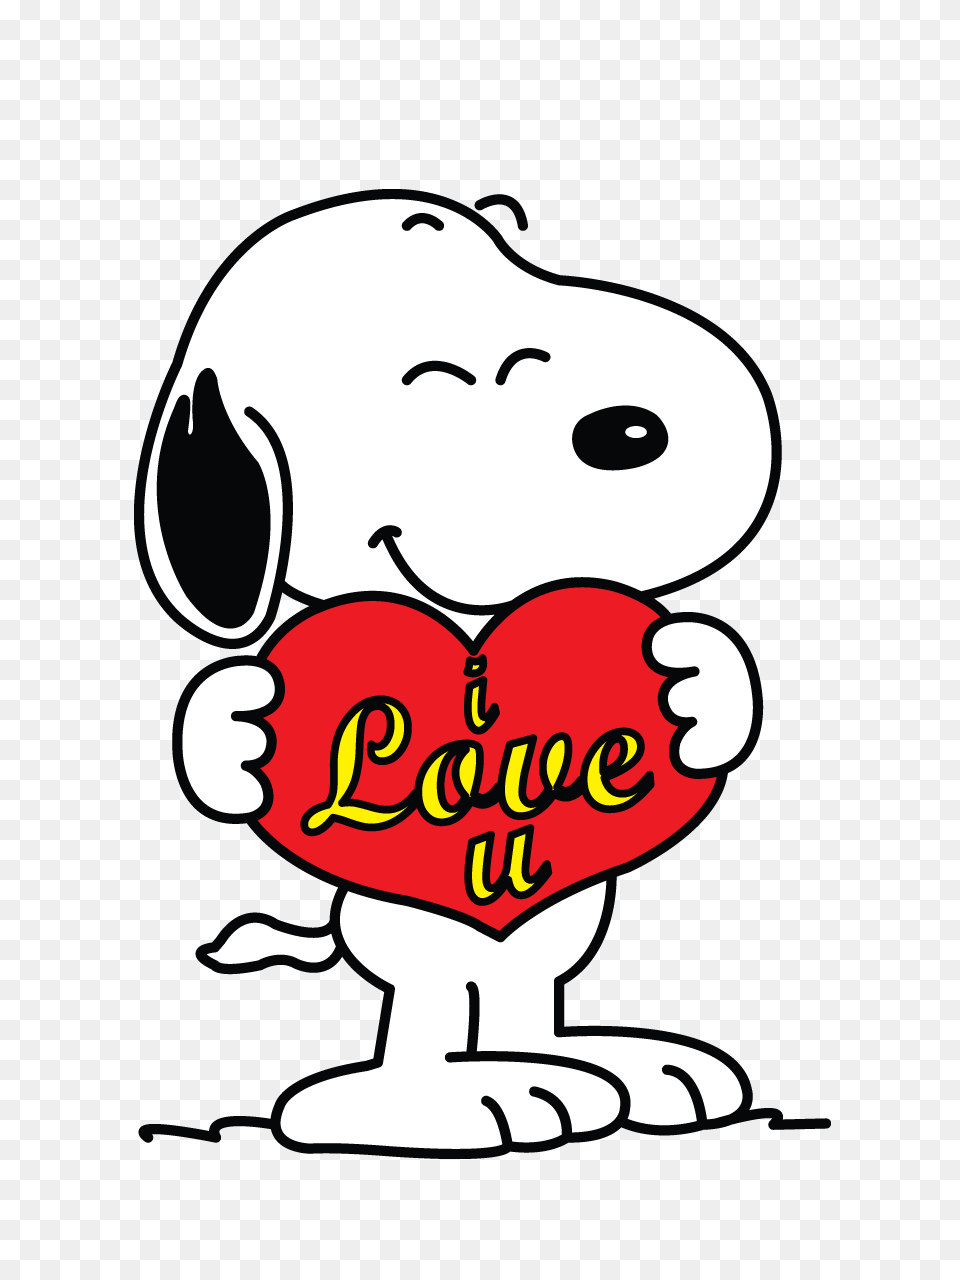 Risultati Immagini Per Snoopy Heart Images Snopy, Sticker, Stencil, Baby, Person Png Image